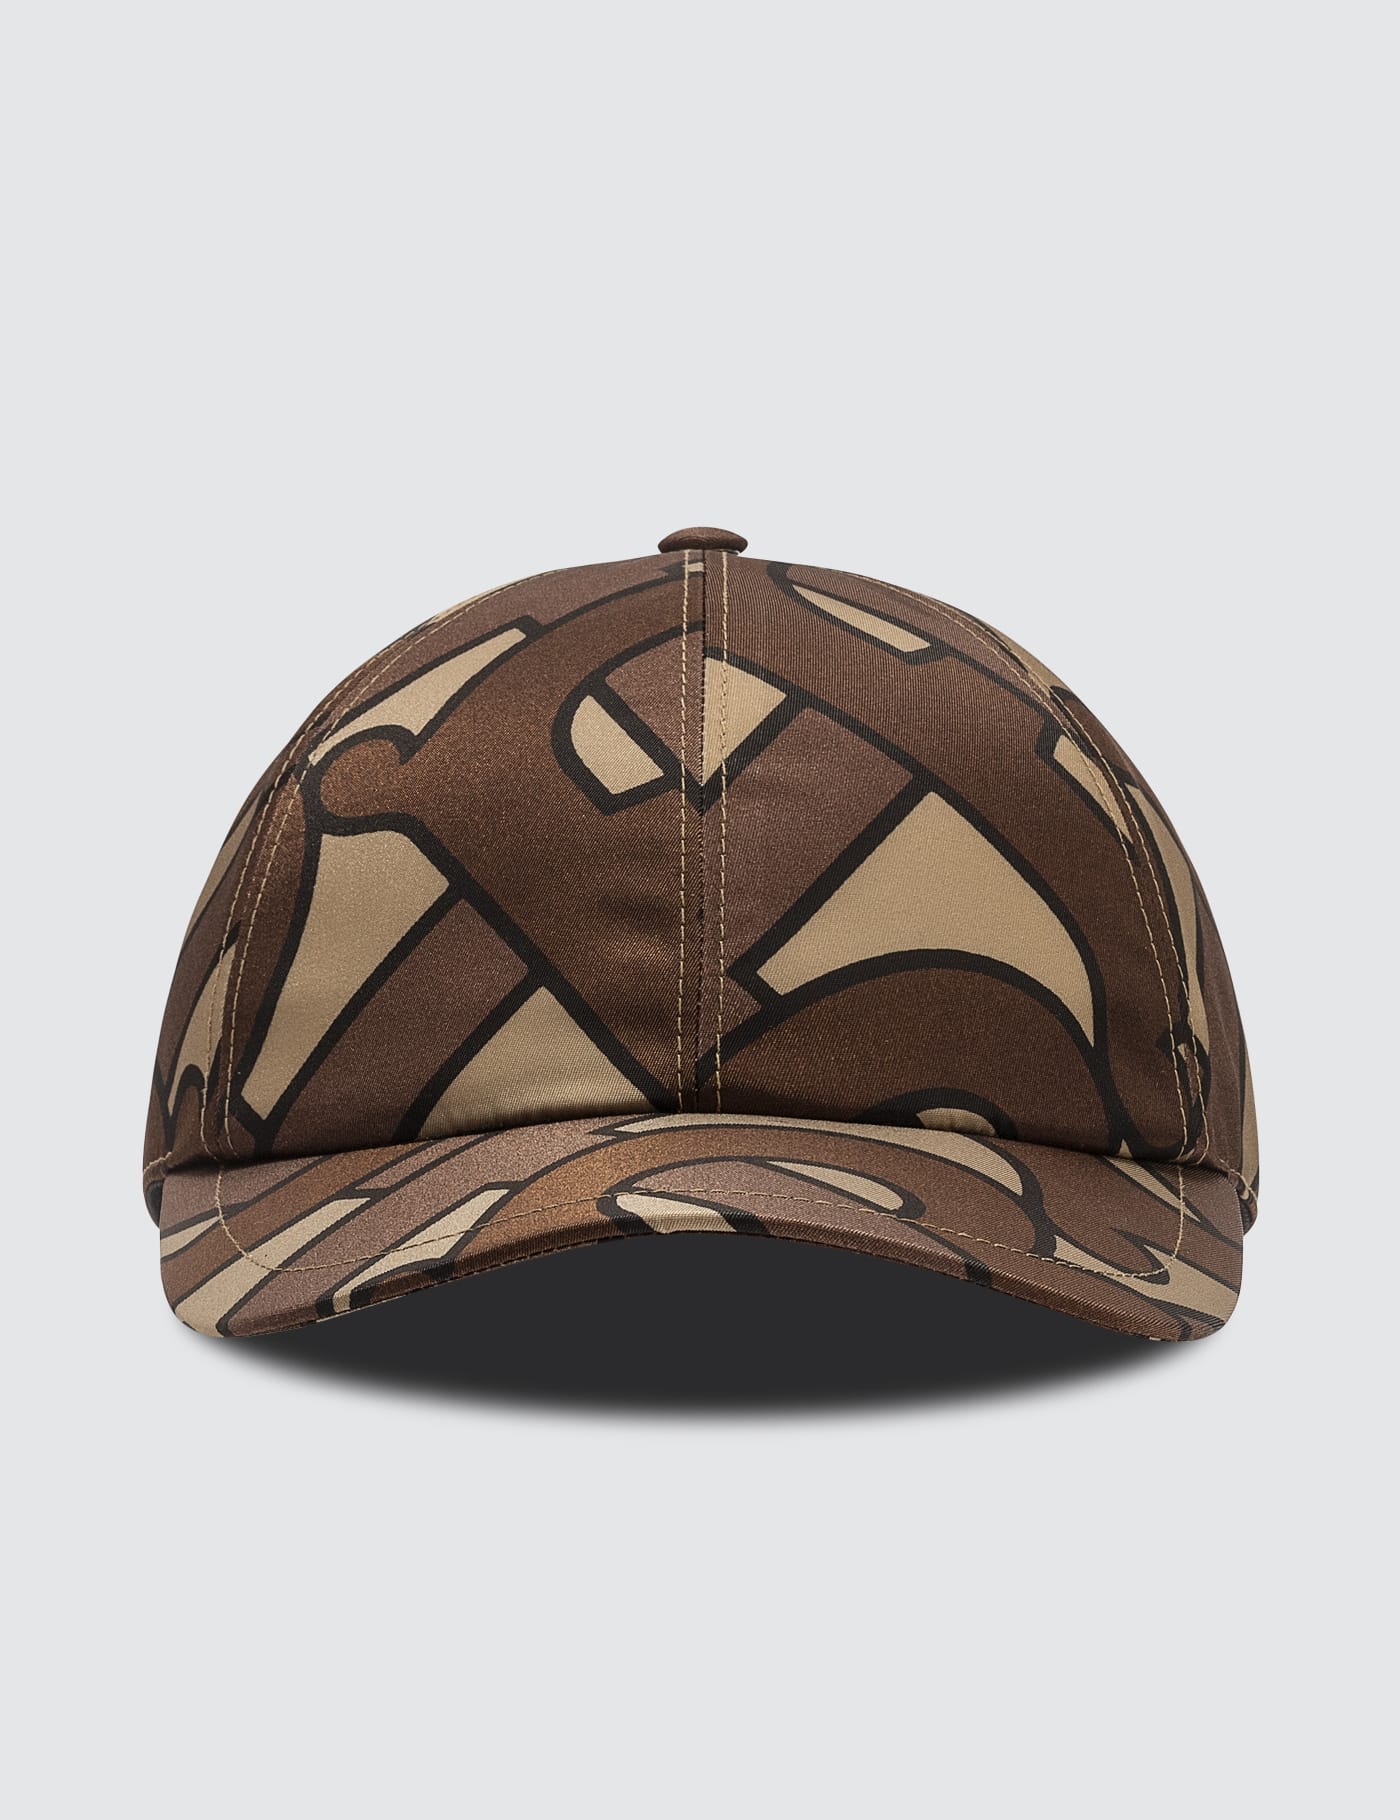 burberry monogram cap